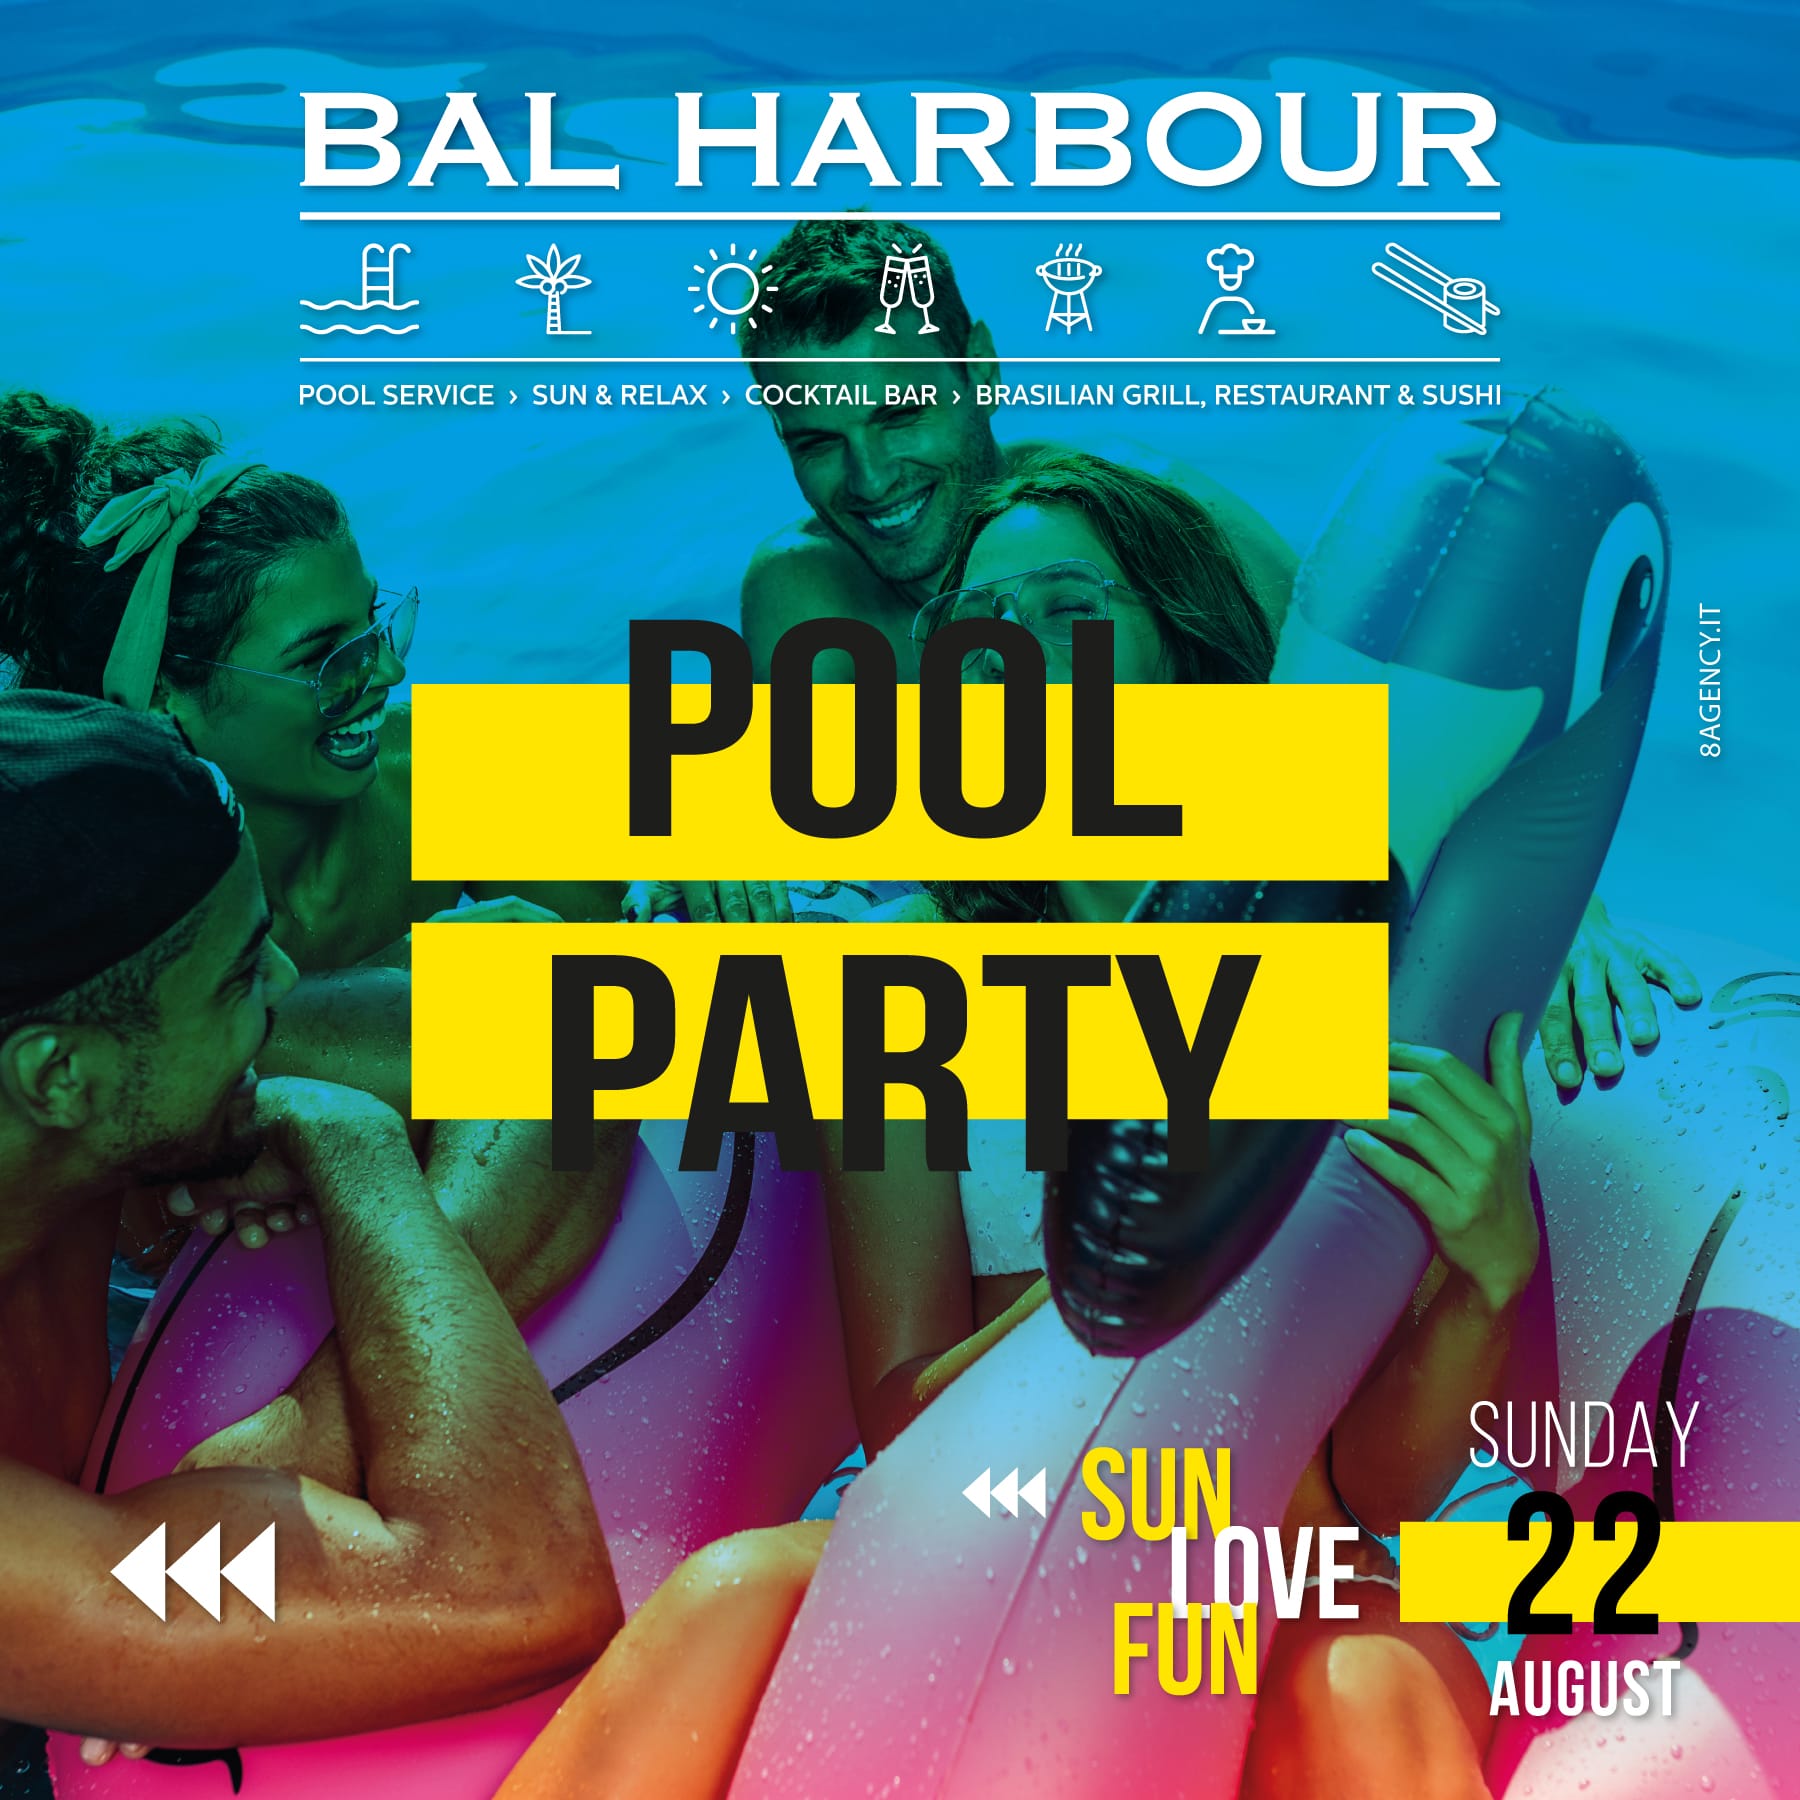 Pool party Domenica 22 agosto 2021. Feste in Piscina San Teodoro Bal Harbour (Sardegna)